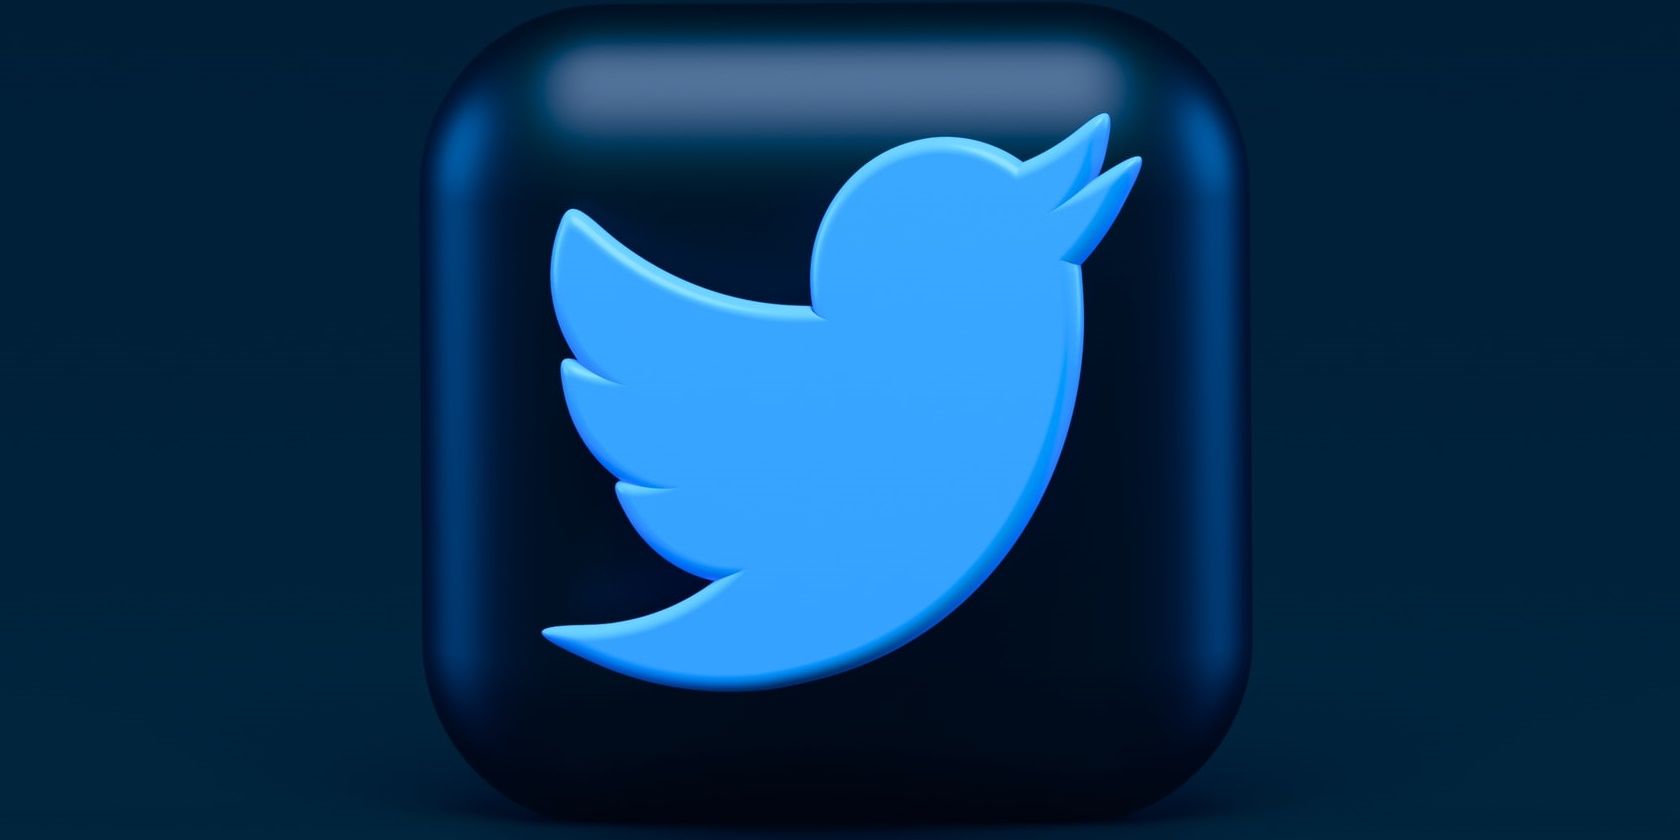 Blue Twitter blue bird logo on dark blue background